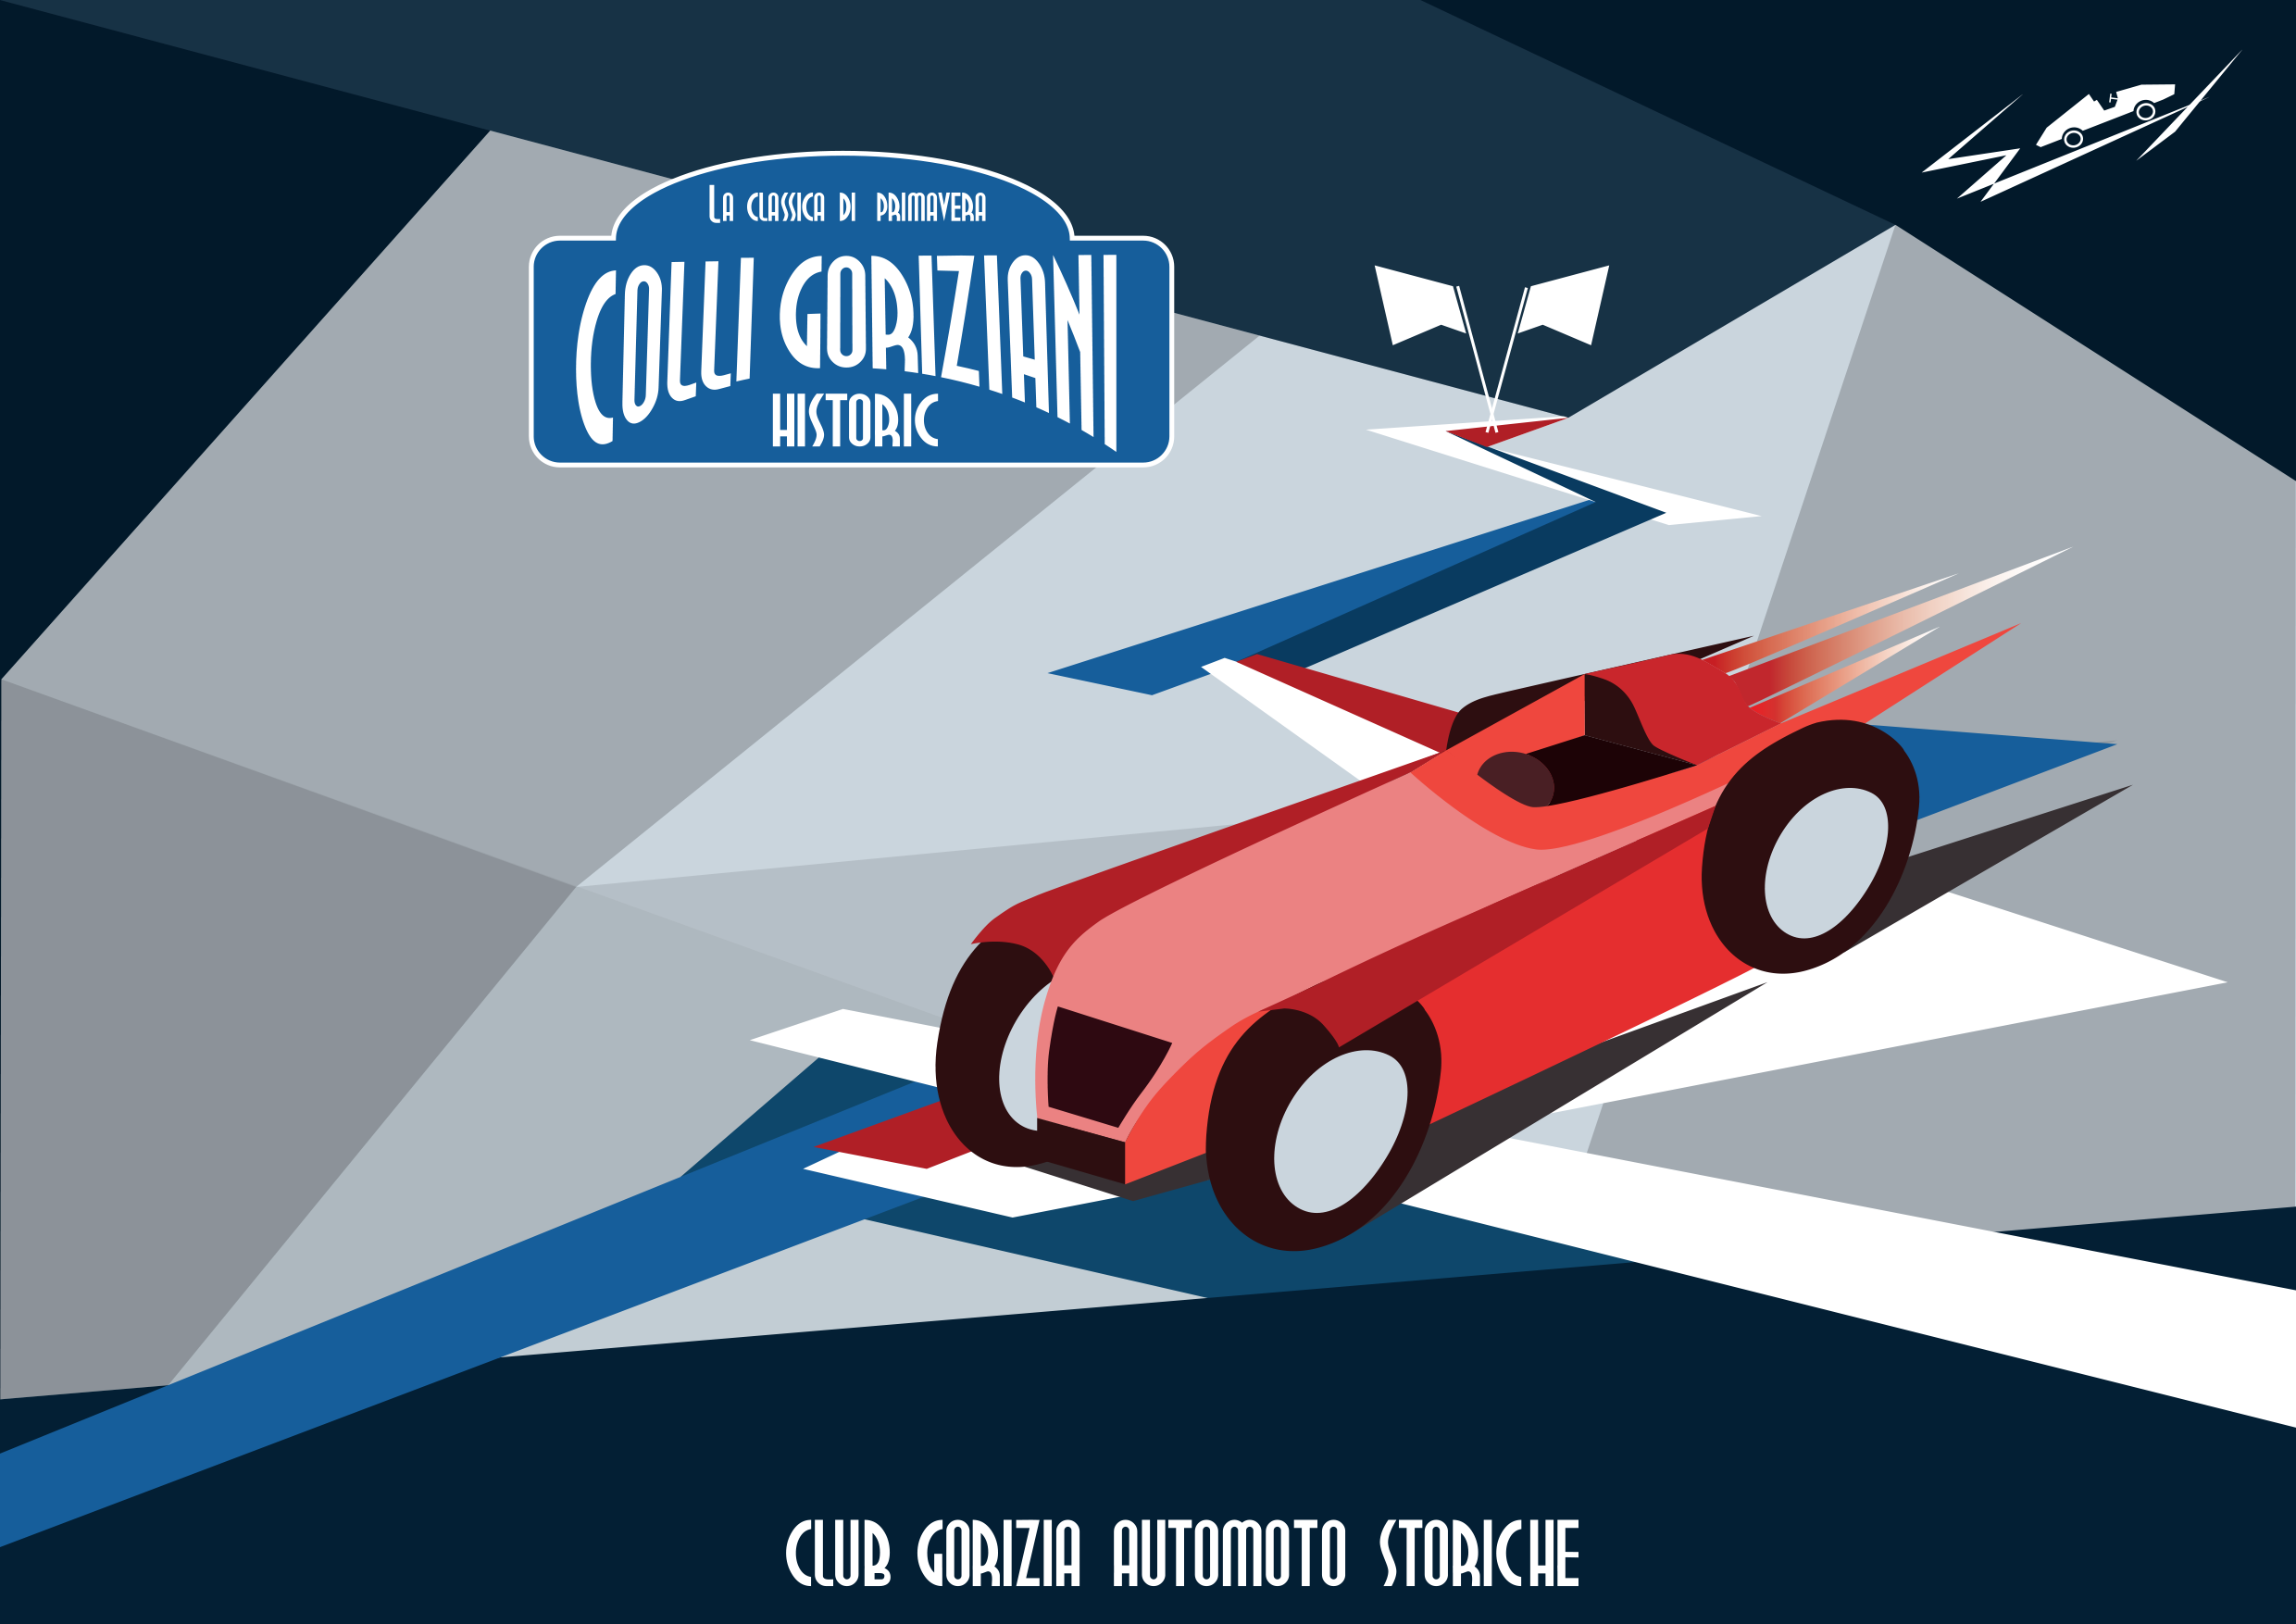 Flyer_Colli Goriziani Historic2020_definitivo_fronte